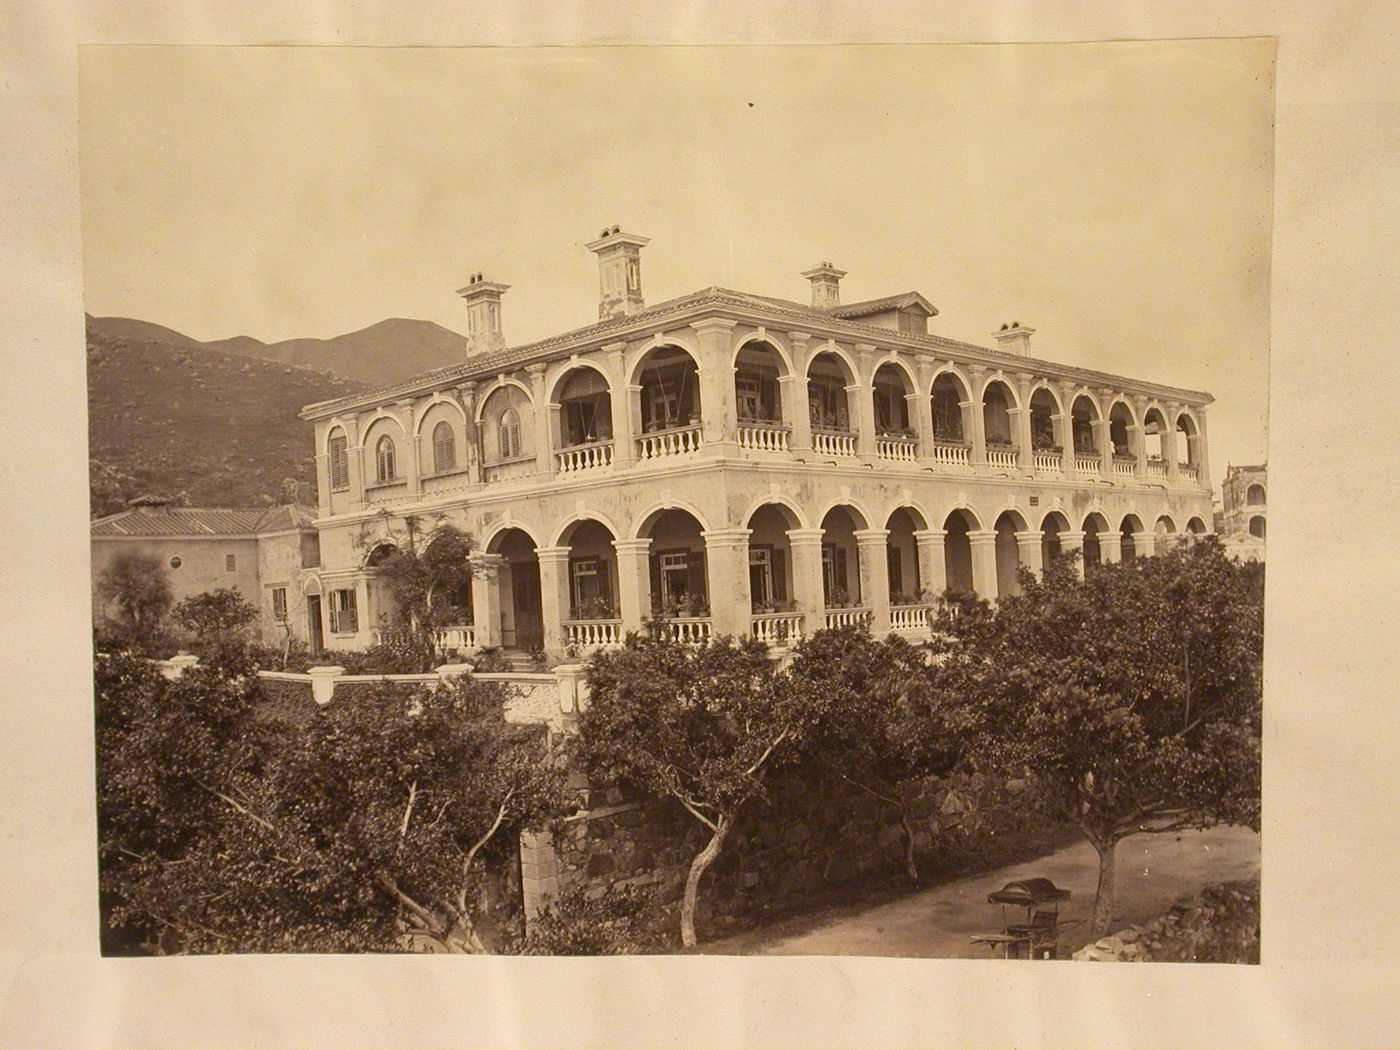 View of colonial dwelling, Hong Kong (now Hong Kong, China)